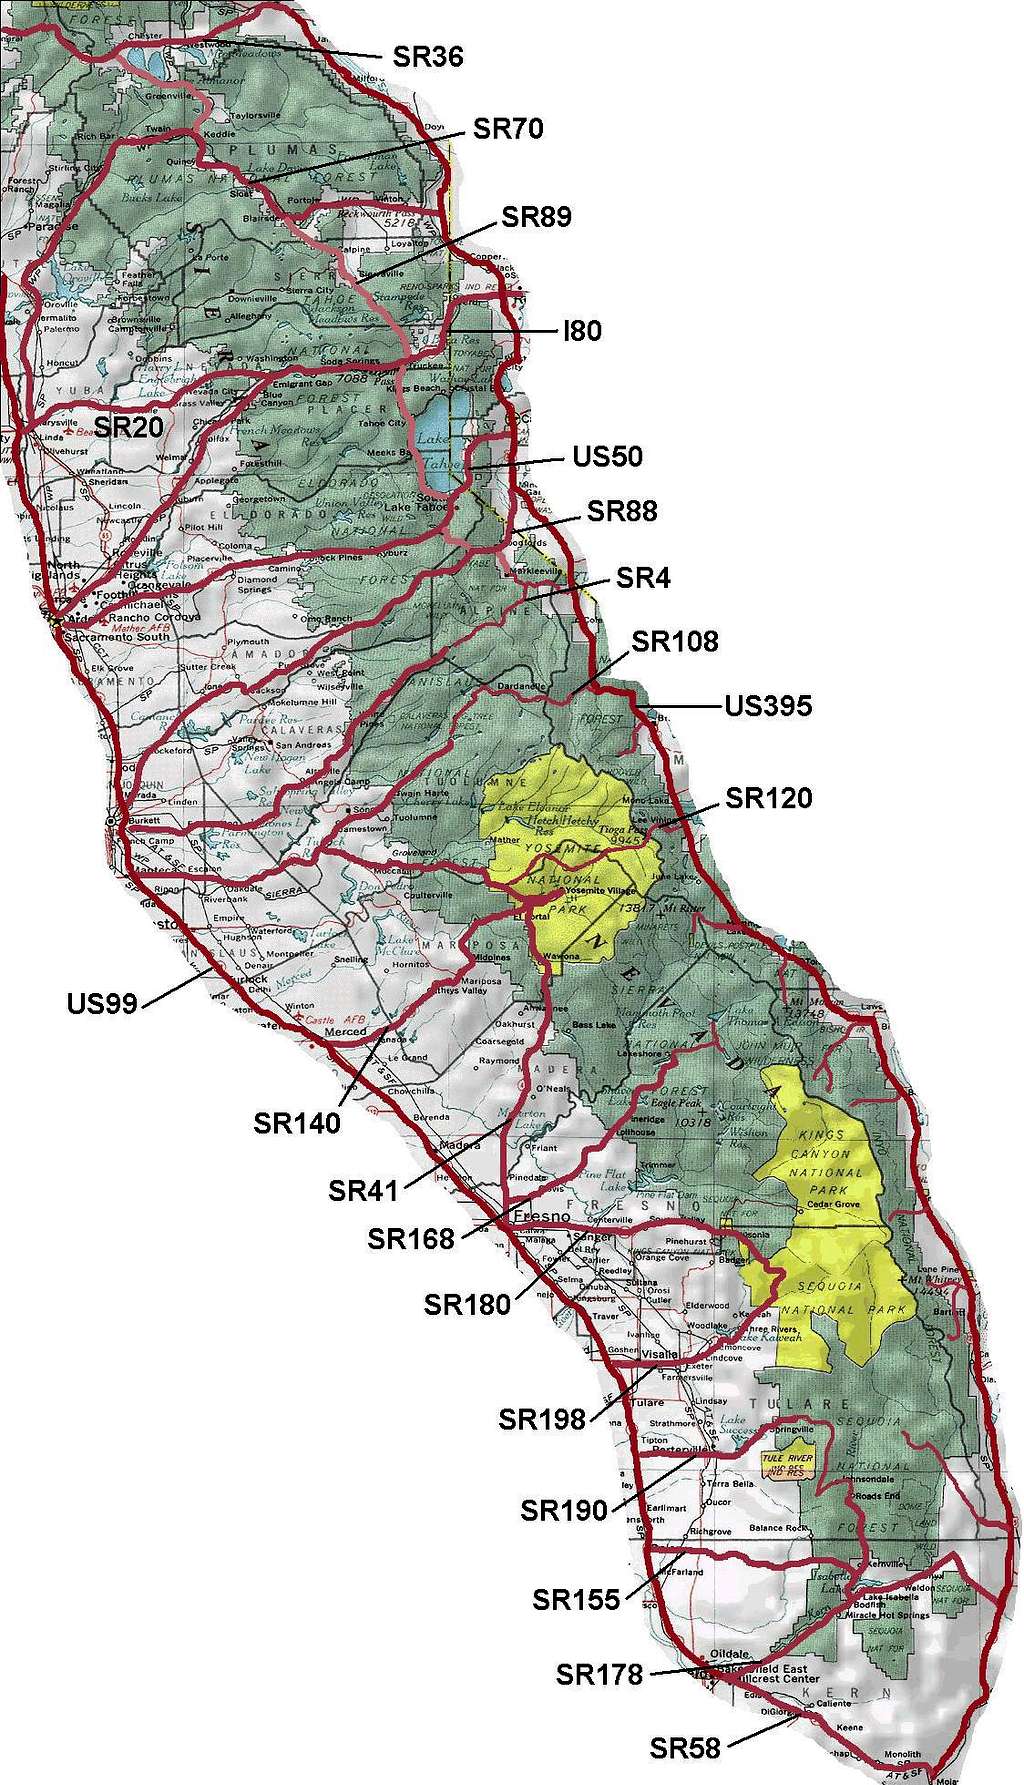 Major Sierra Roads